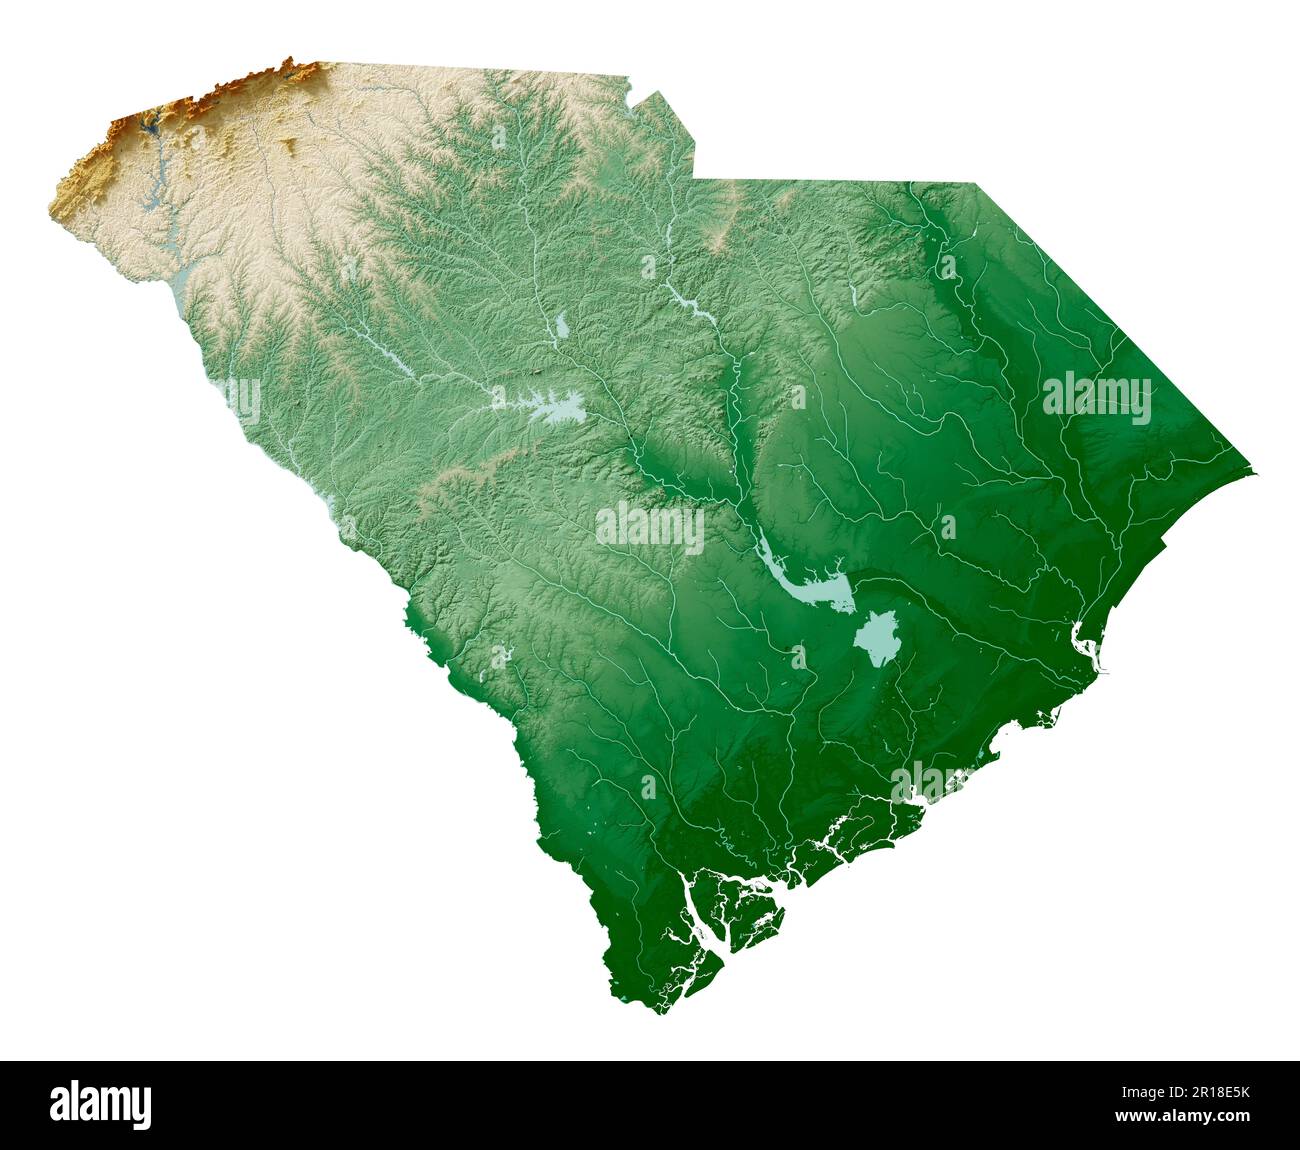 Lo stato degli Stati Uniti del South Carolina. Rendering 3D dettagliato di una mappa in rilievo ombreggiata con fiumi e laghi. Colorato dall'elevazione. Creato con i dati satellitari. Foto Stock